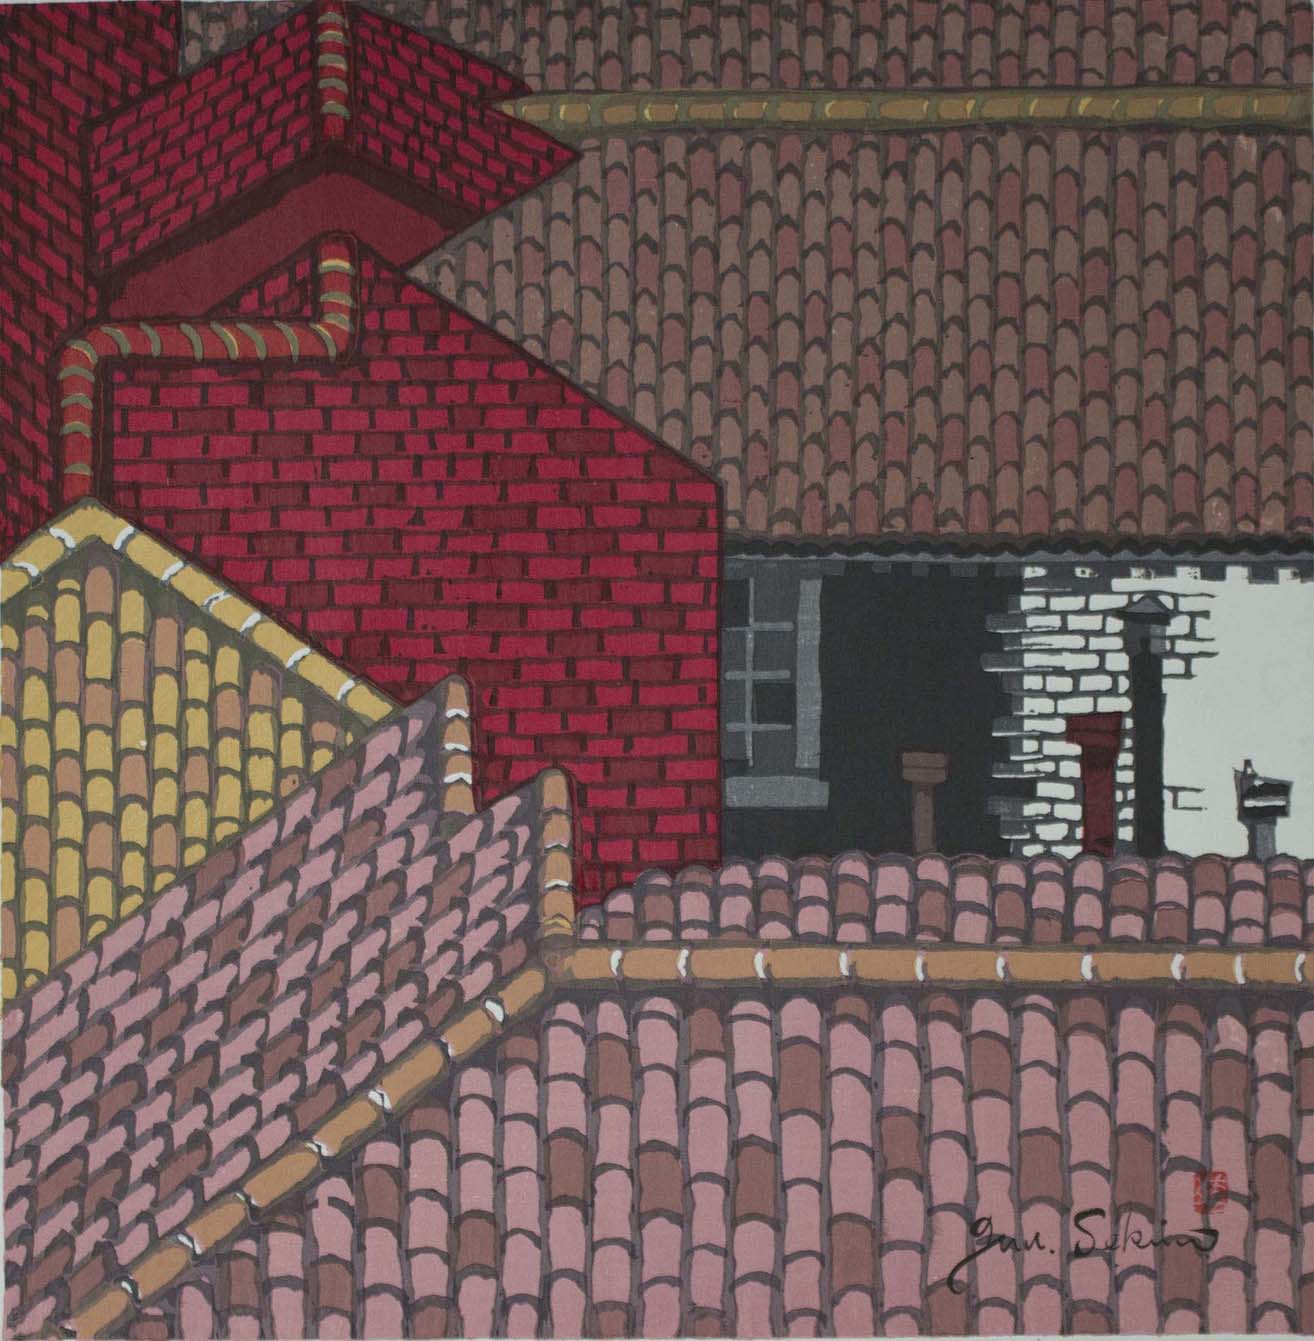 Junichiro Sekino, "Rooftops of Venice," woodcut